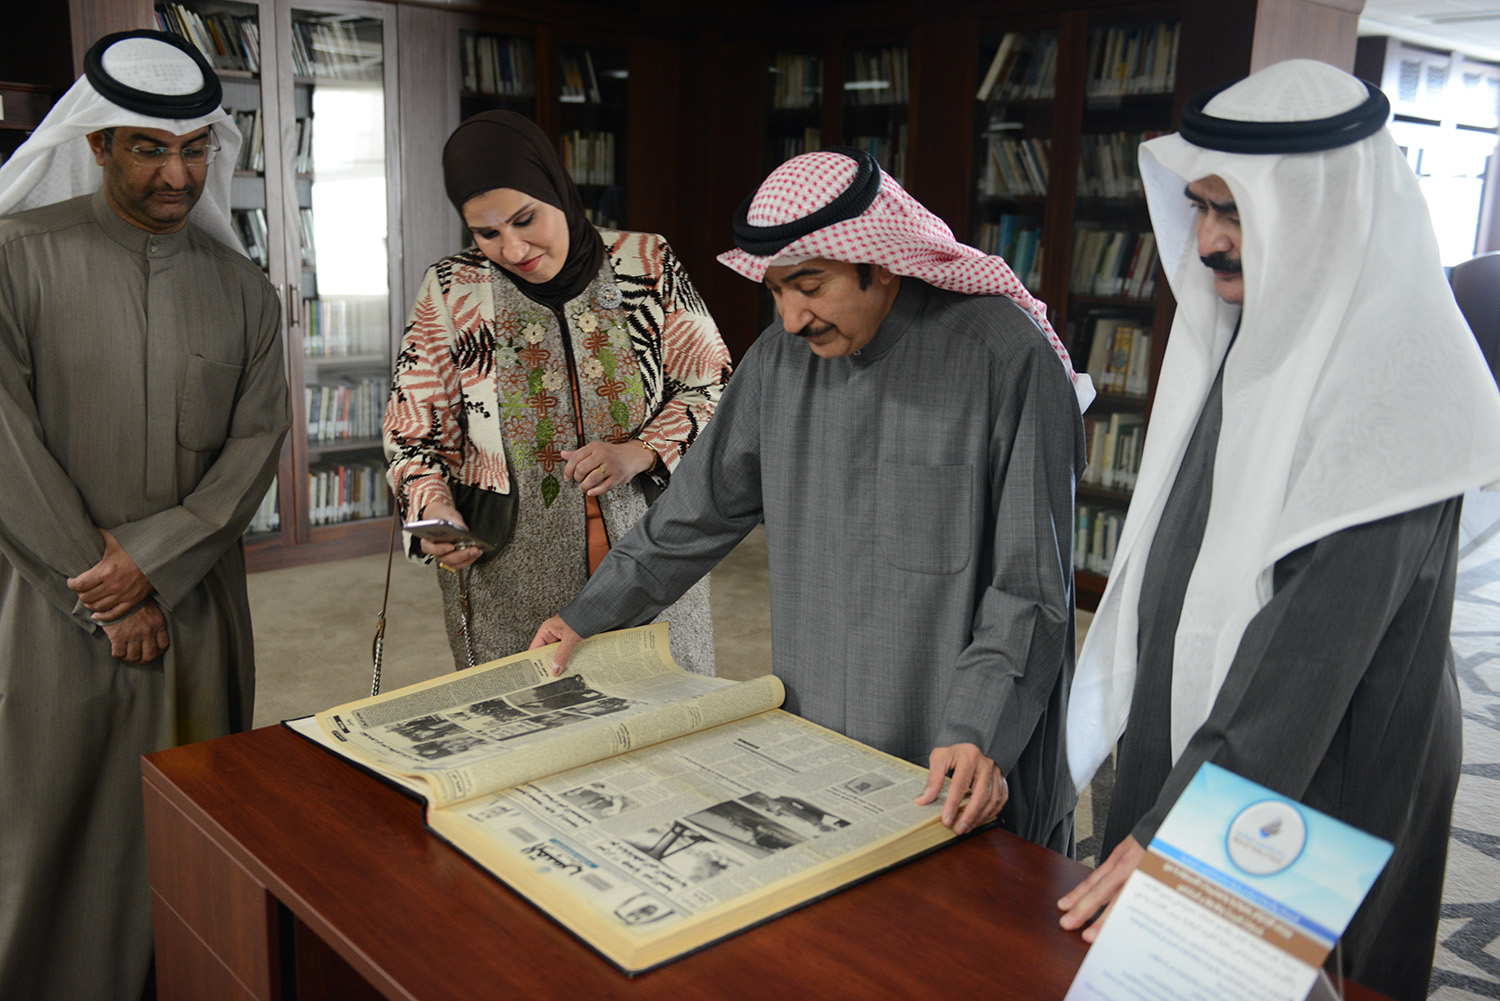 نائب المدير العام لقطاع التحرير رئيس تحرير وكالة الانباء الكويتية (كونا) سعد العلي خلال زيارة قام بها الى مكتبة الكويت الوطنية